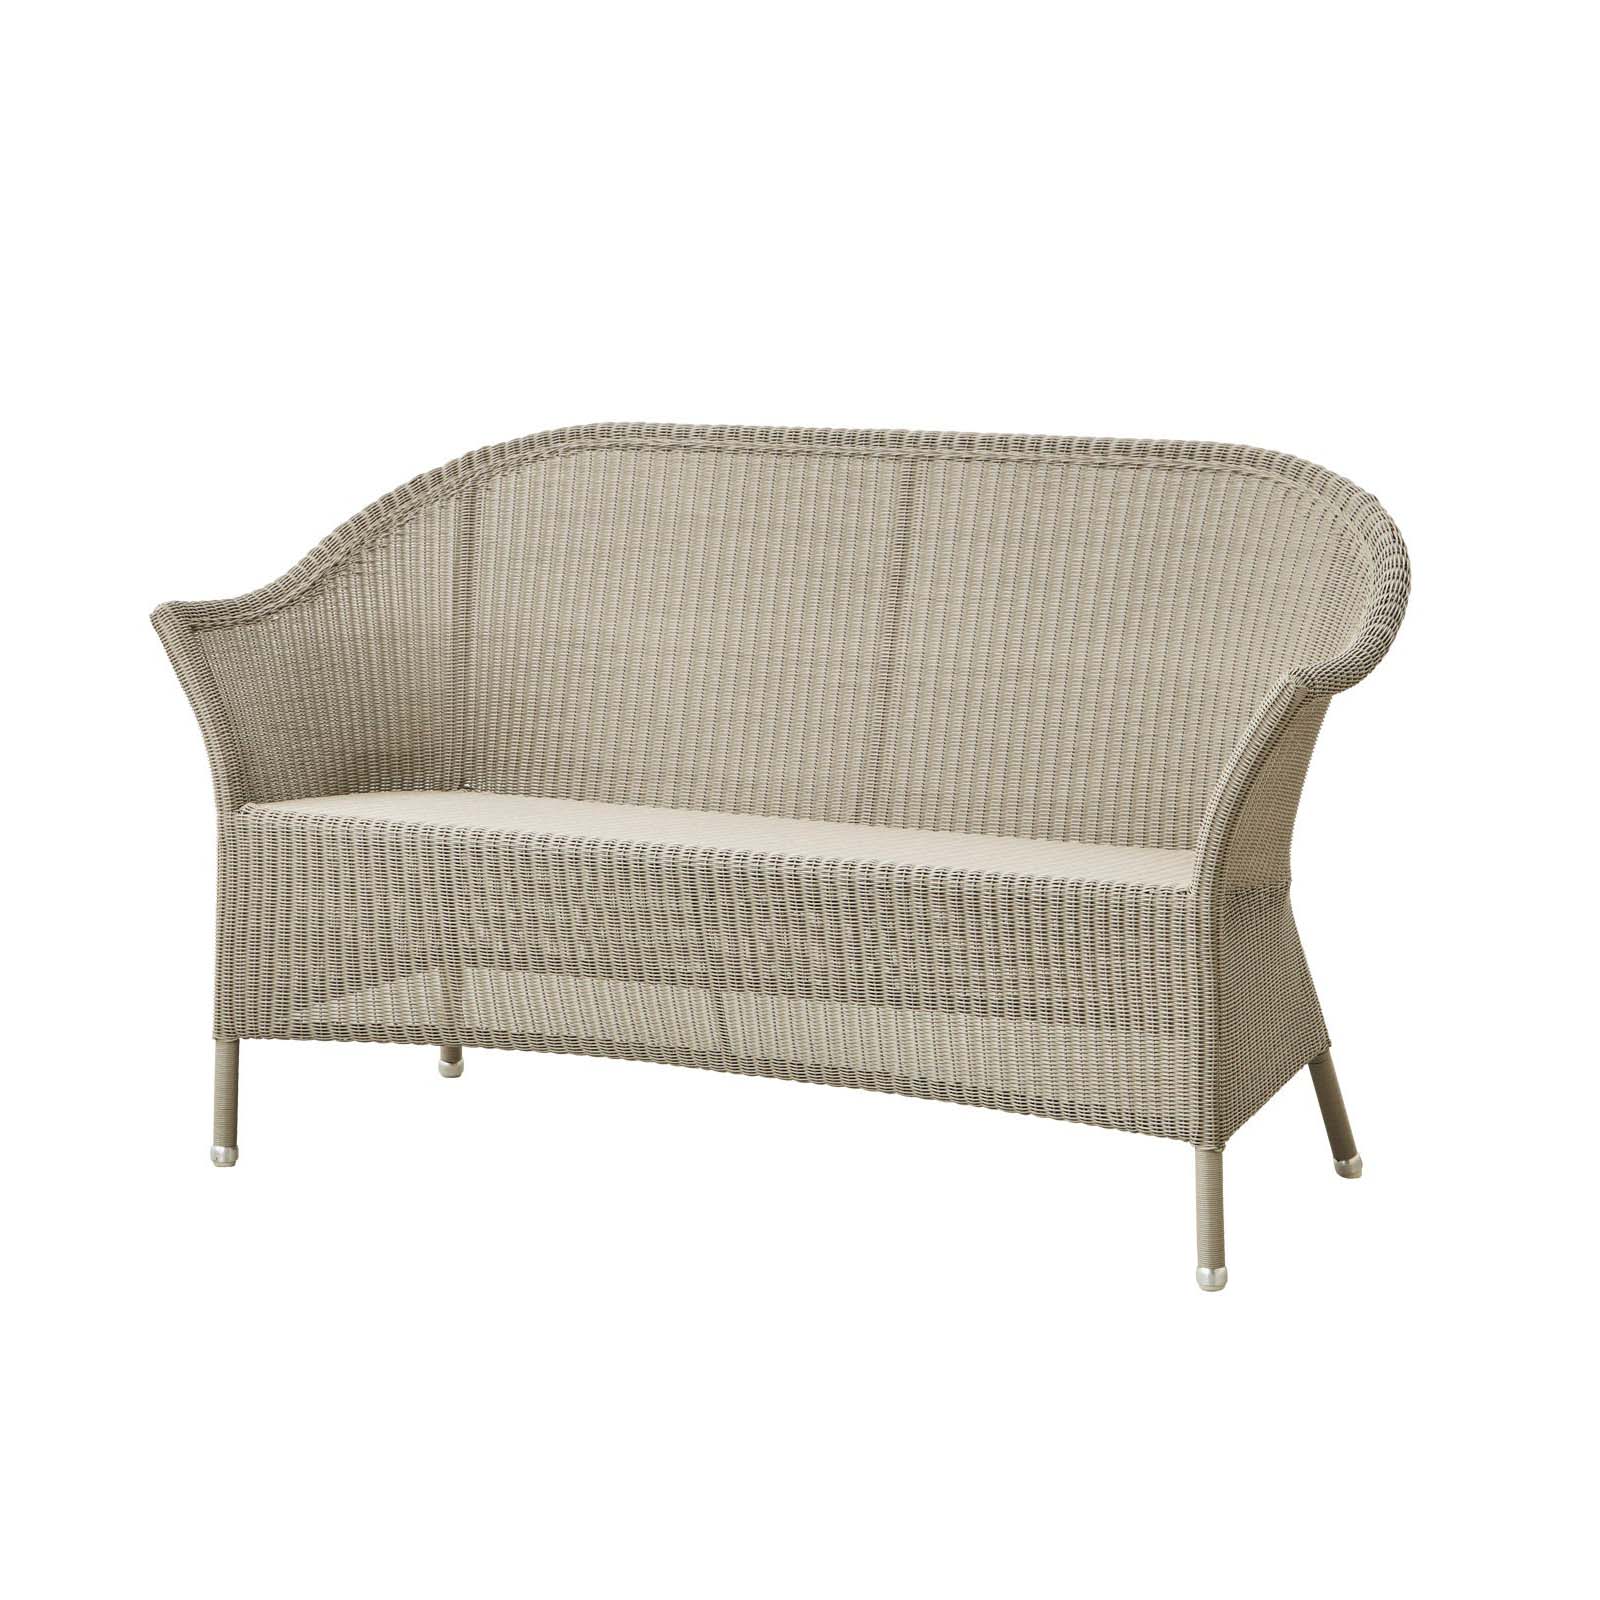 Lansing 2-Sitzer Sofa aus Cane-line Weave in Natural mit Kissen aus Cane-line Natté in Grey